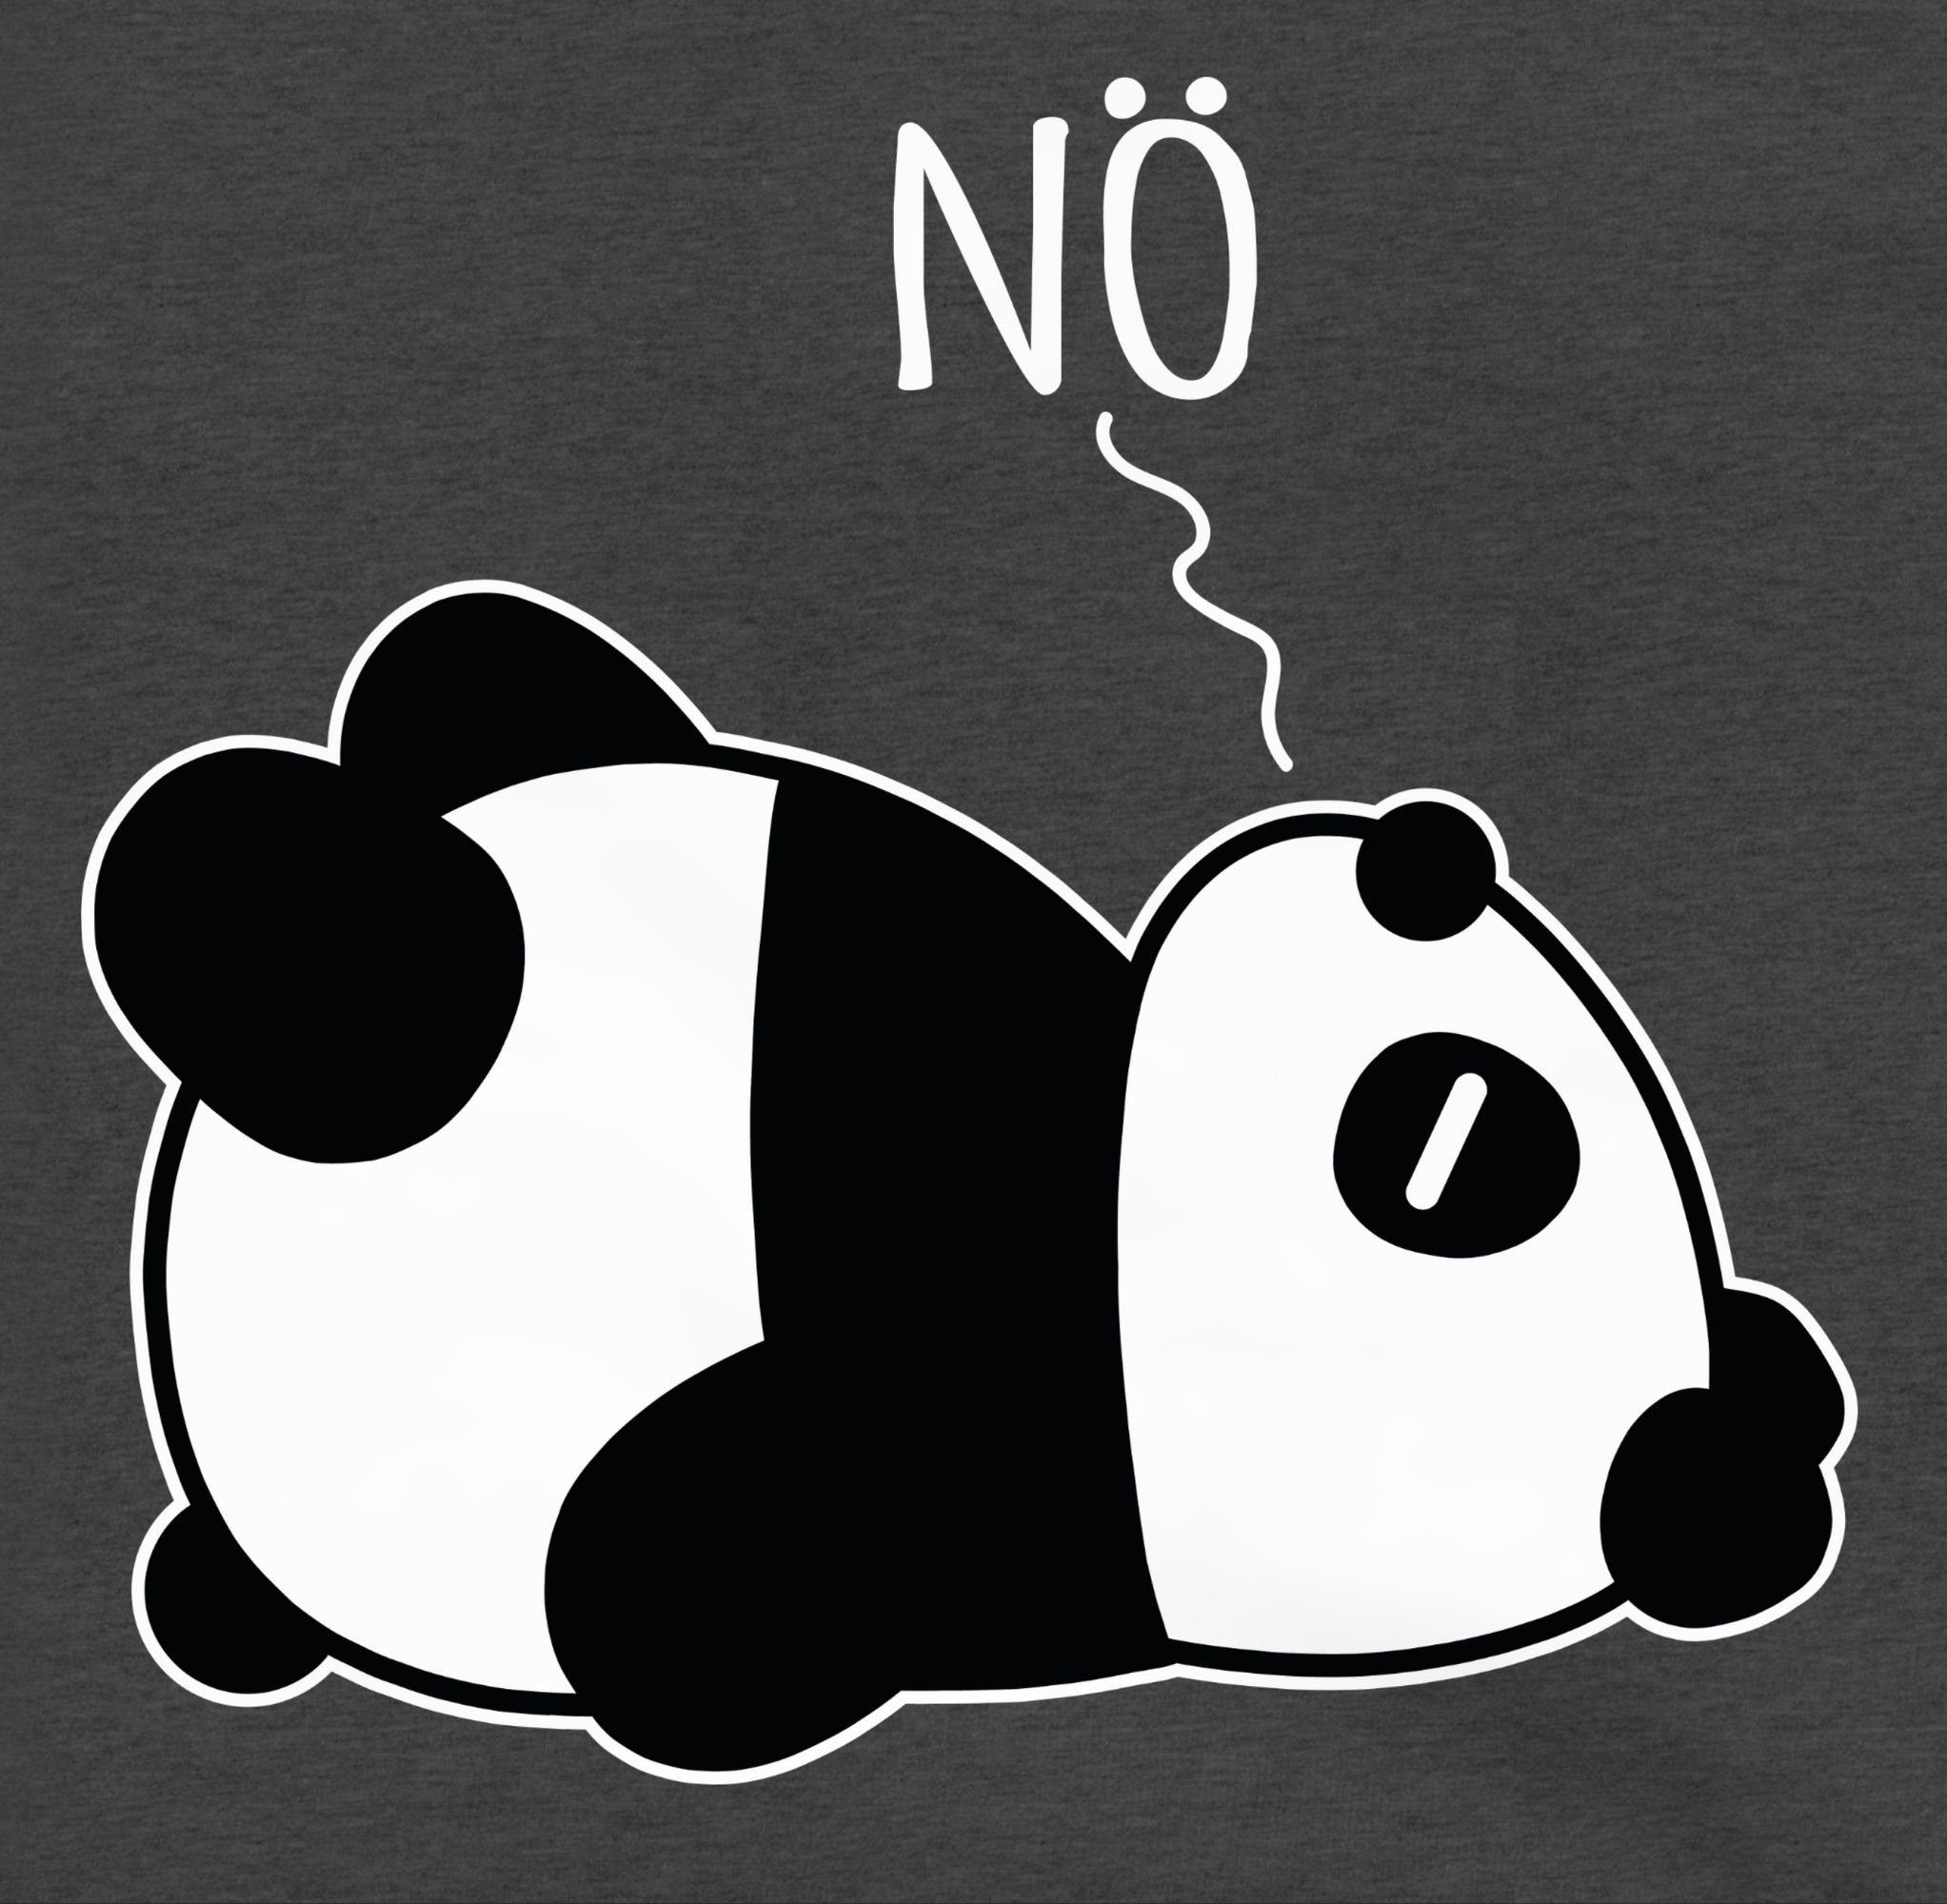 Shirtracer Hoodie Panda meliert weiß 3 Nö Kinder Anthrazit Sprüche Statement - 